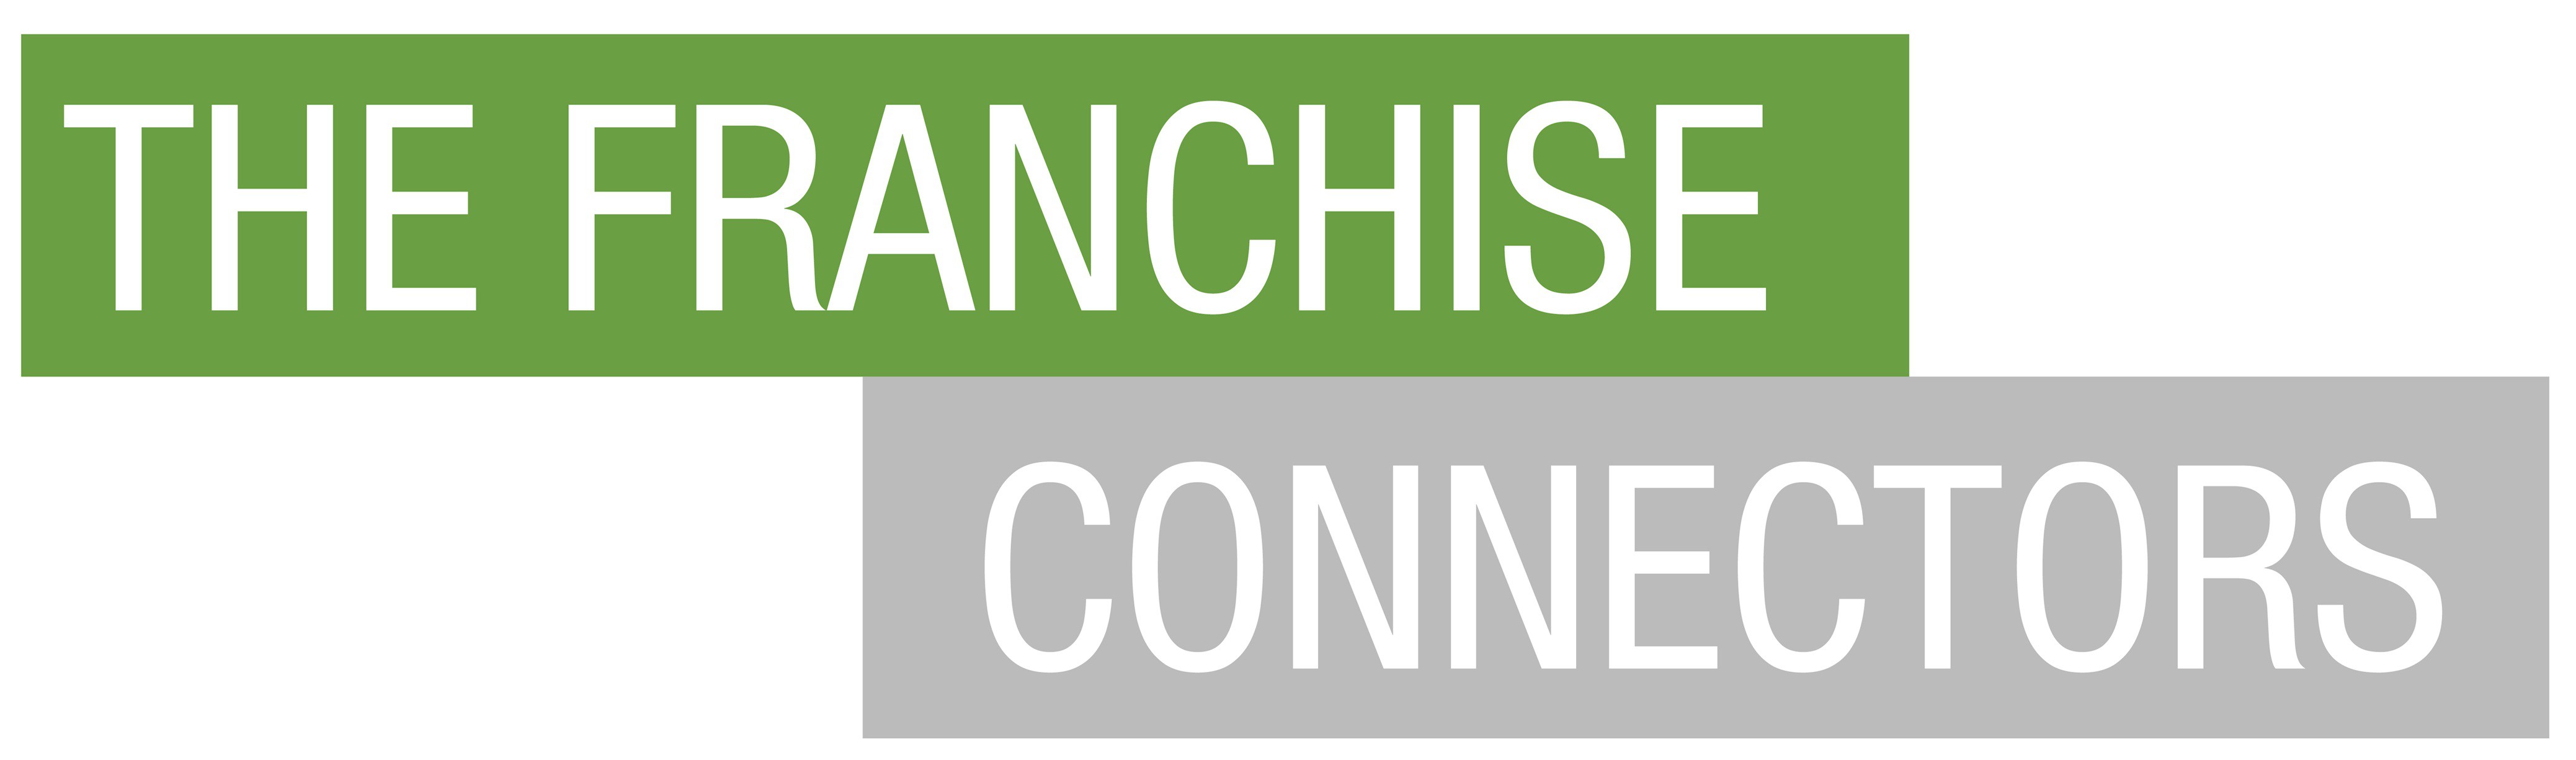 The Franchise Connectors Logo